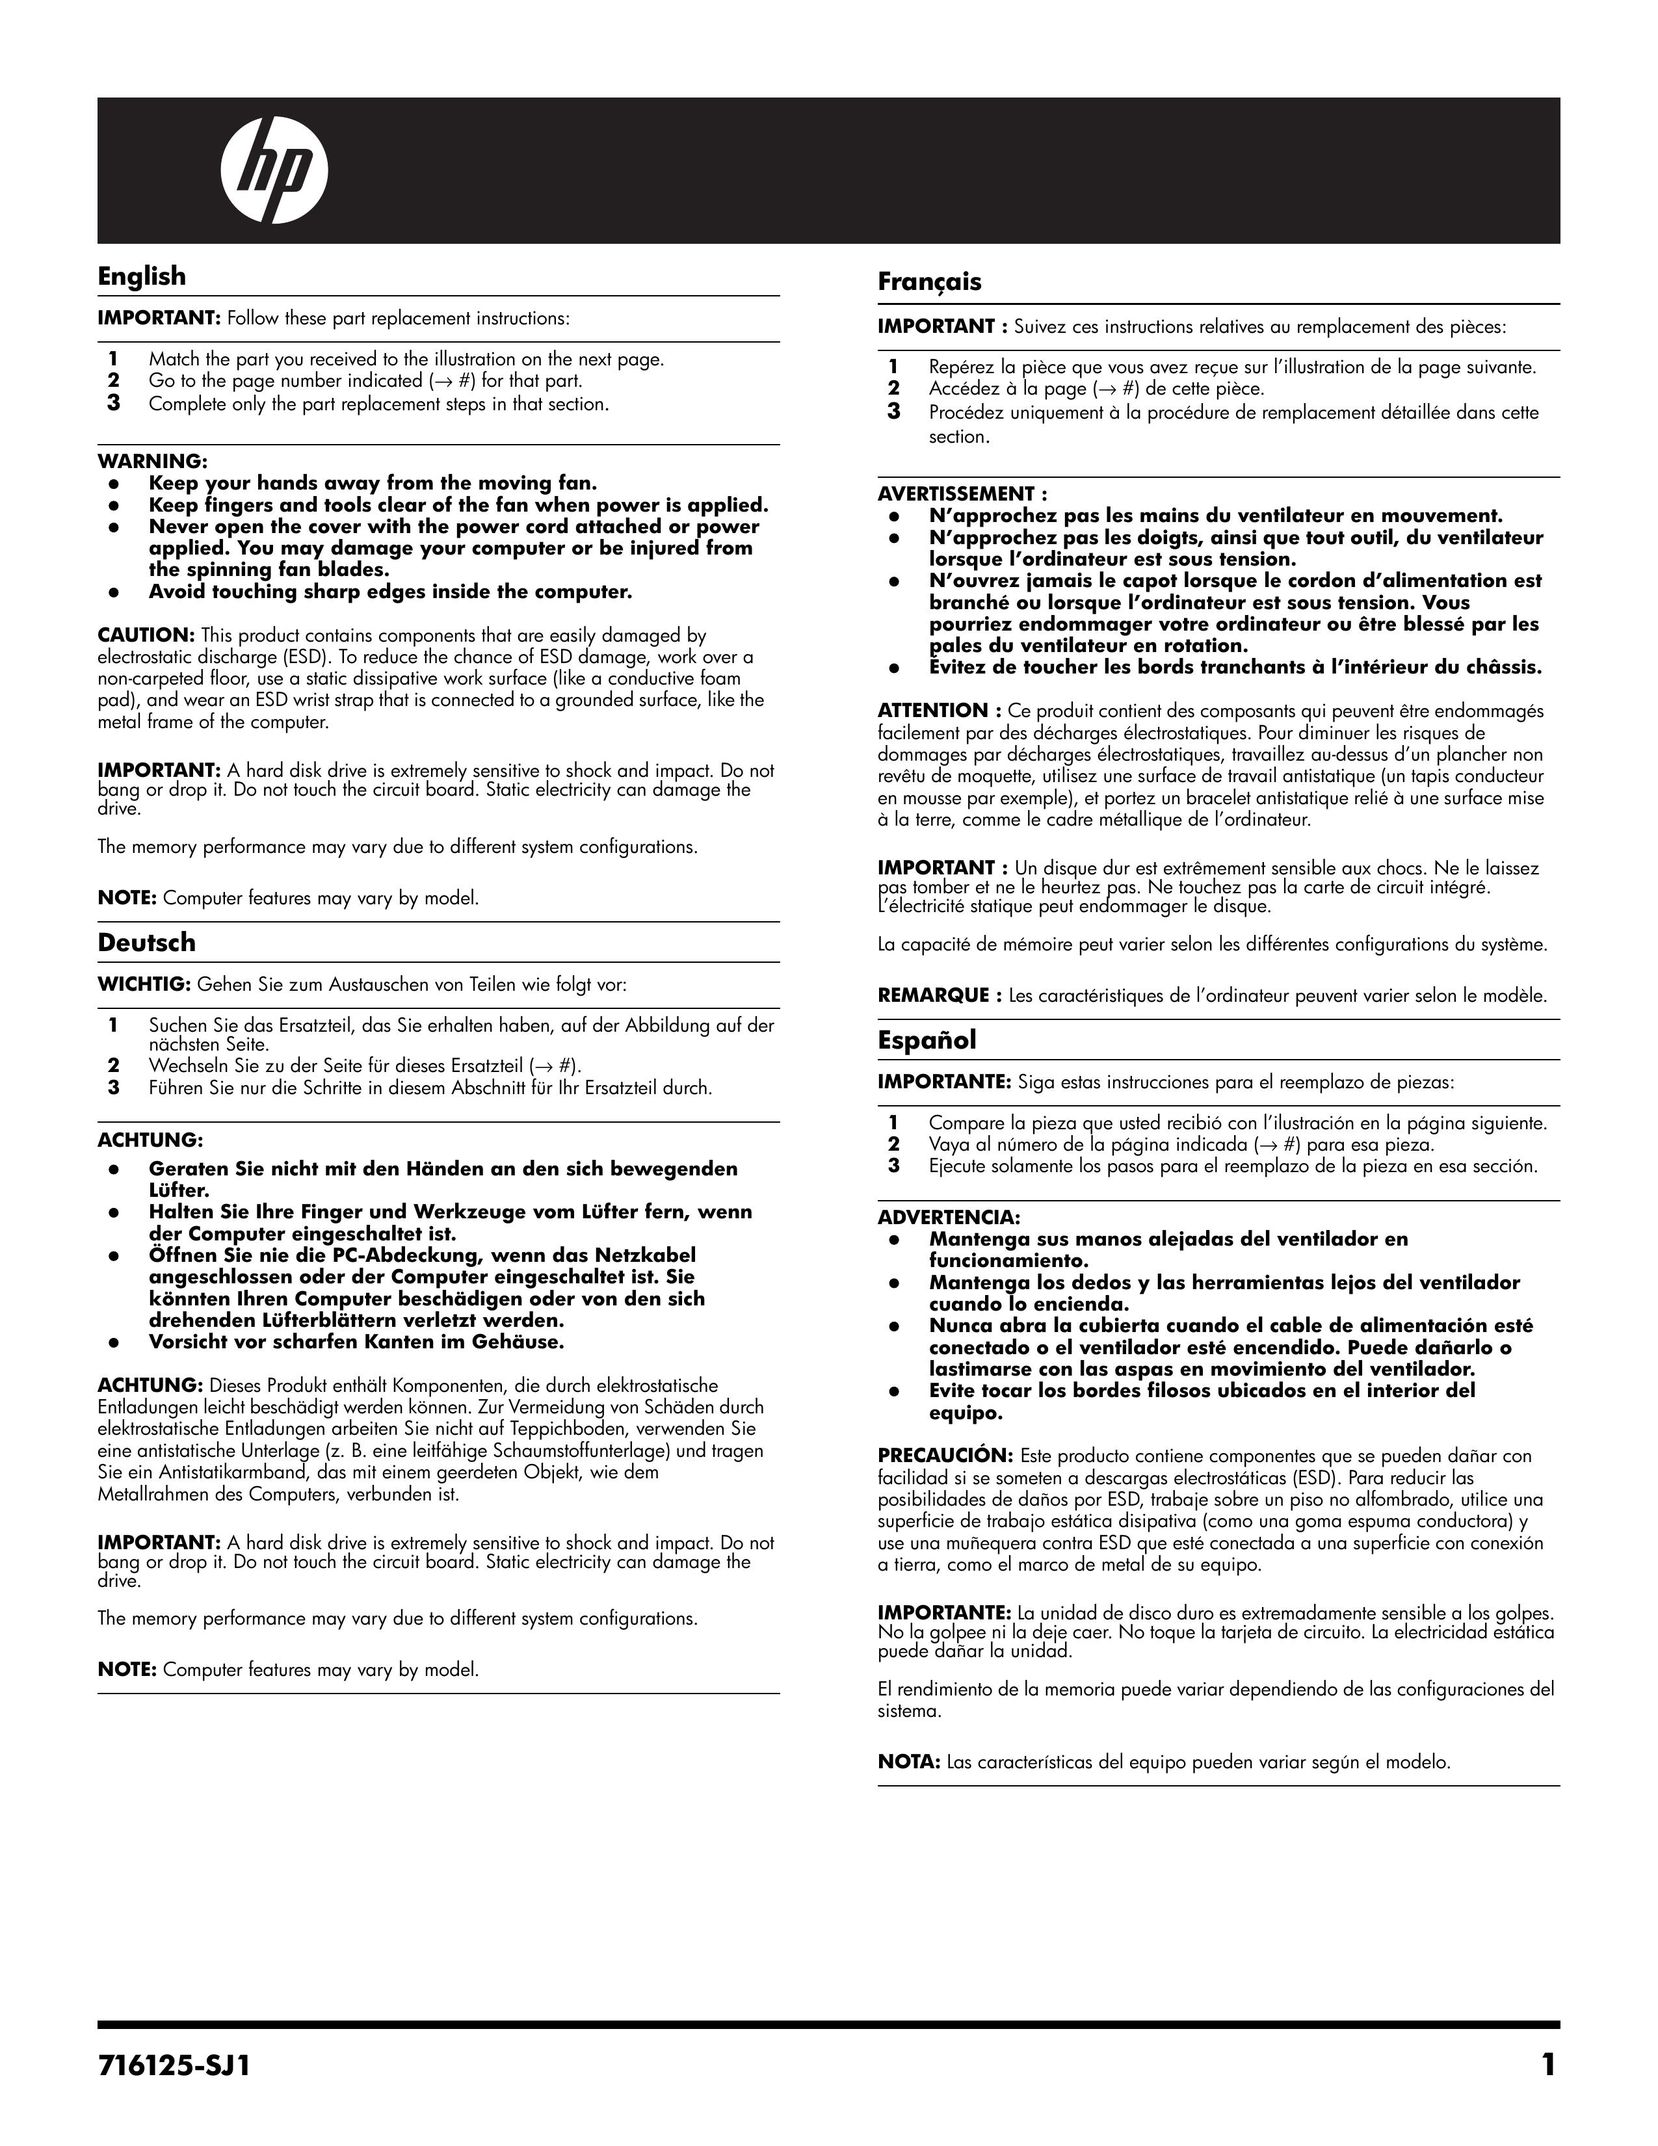 HP (Hewlett-Packard) 20-b010 Personal Computer User Manual